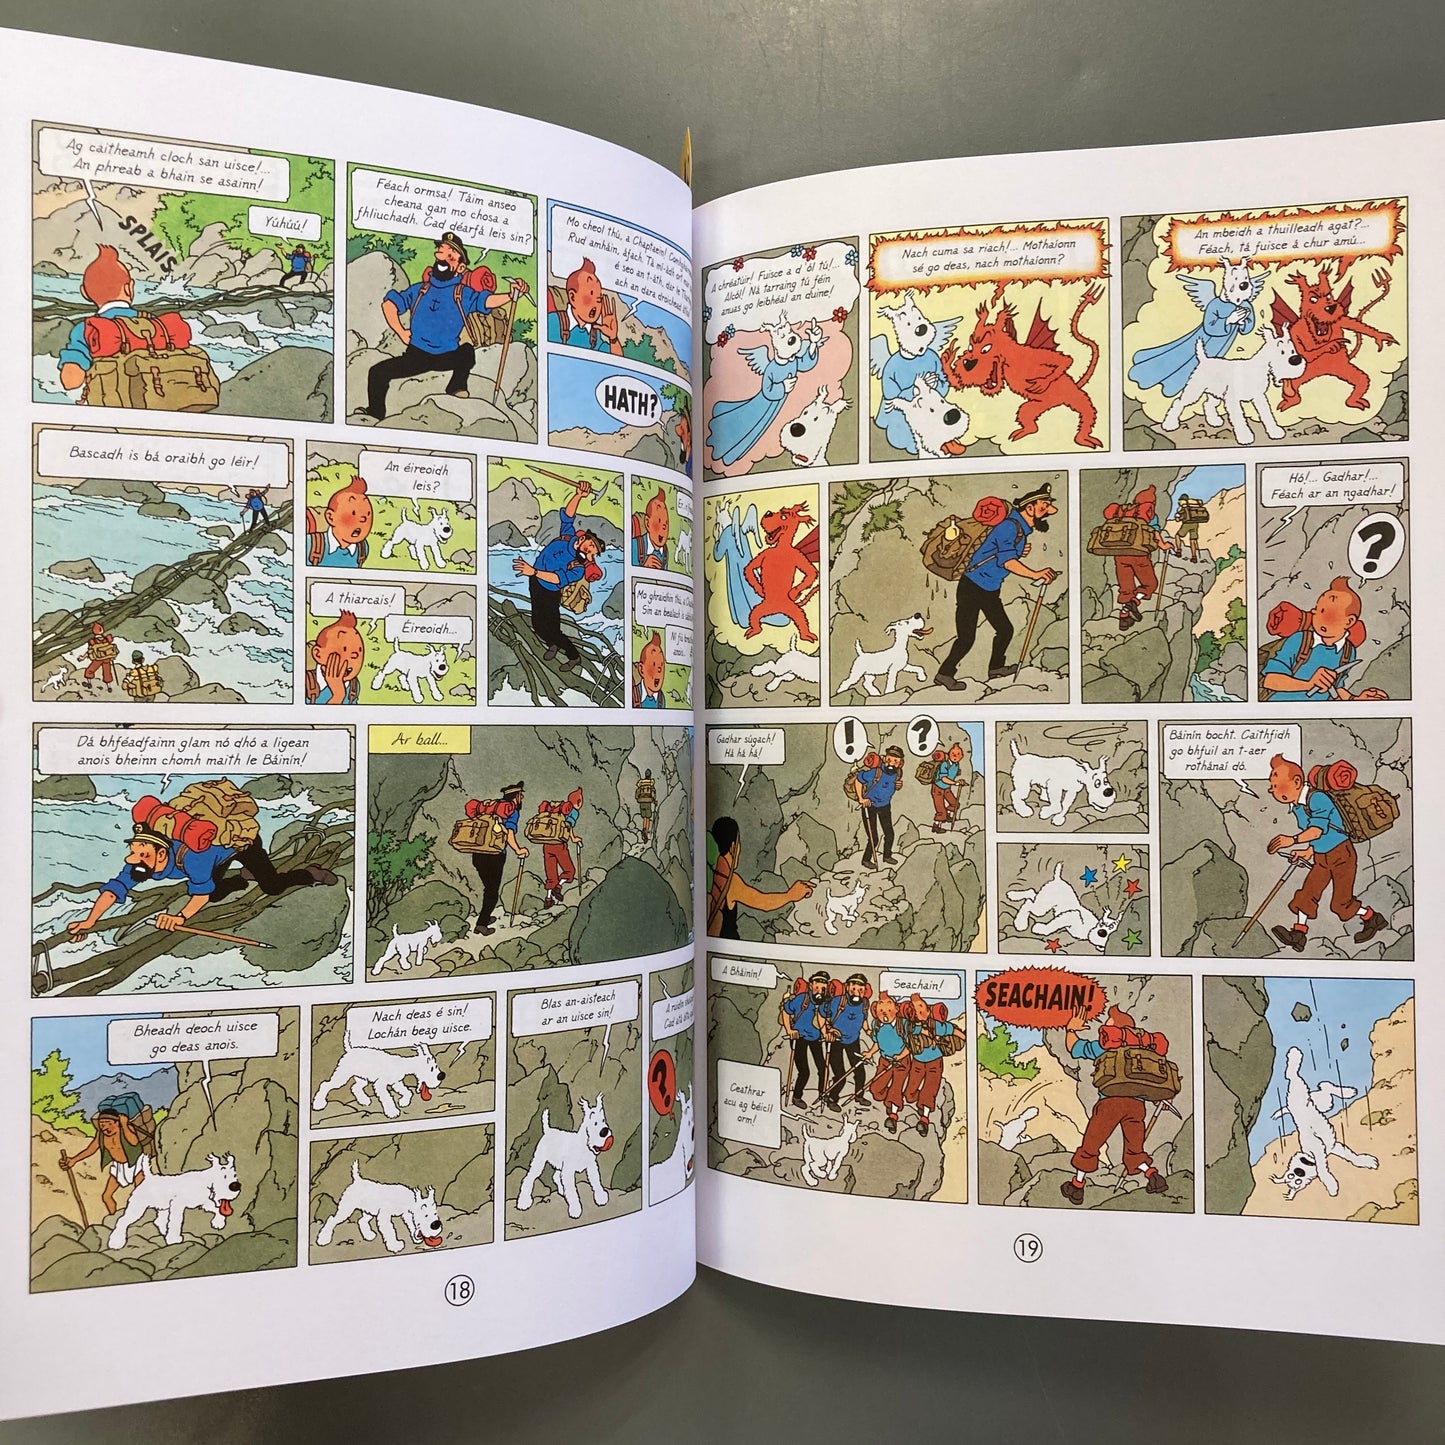 Eachtraí Tintin: Tintin sa Tibéid